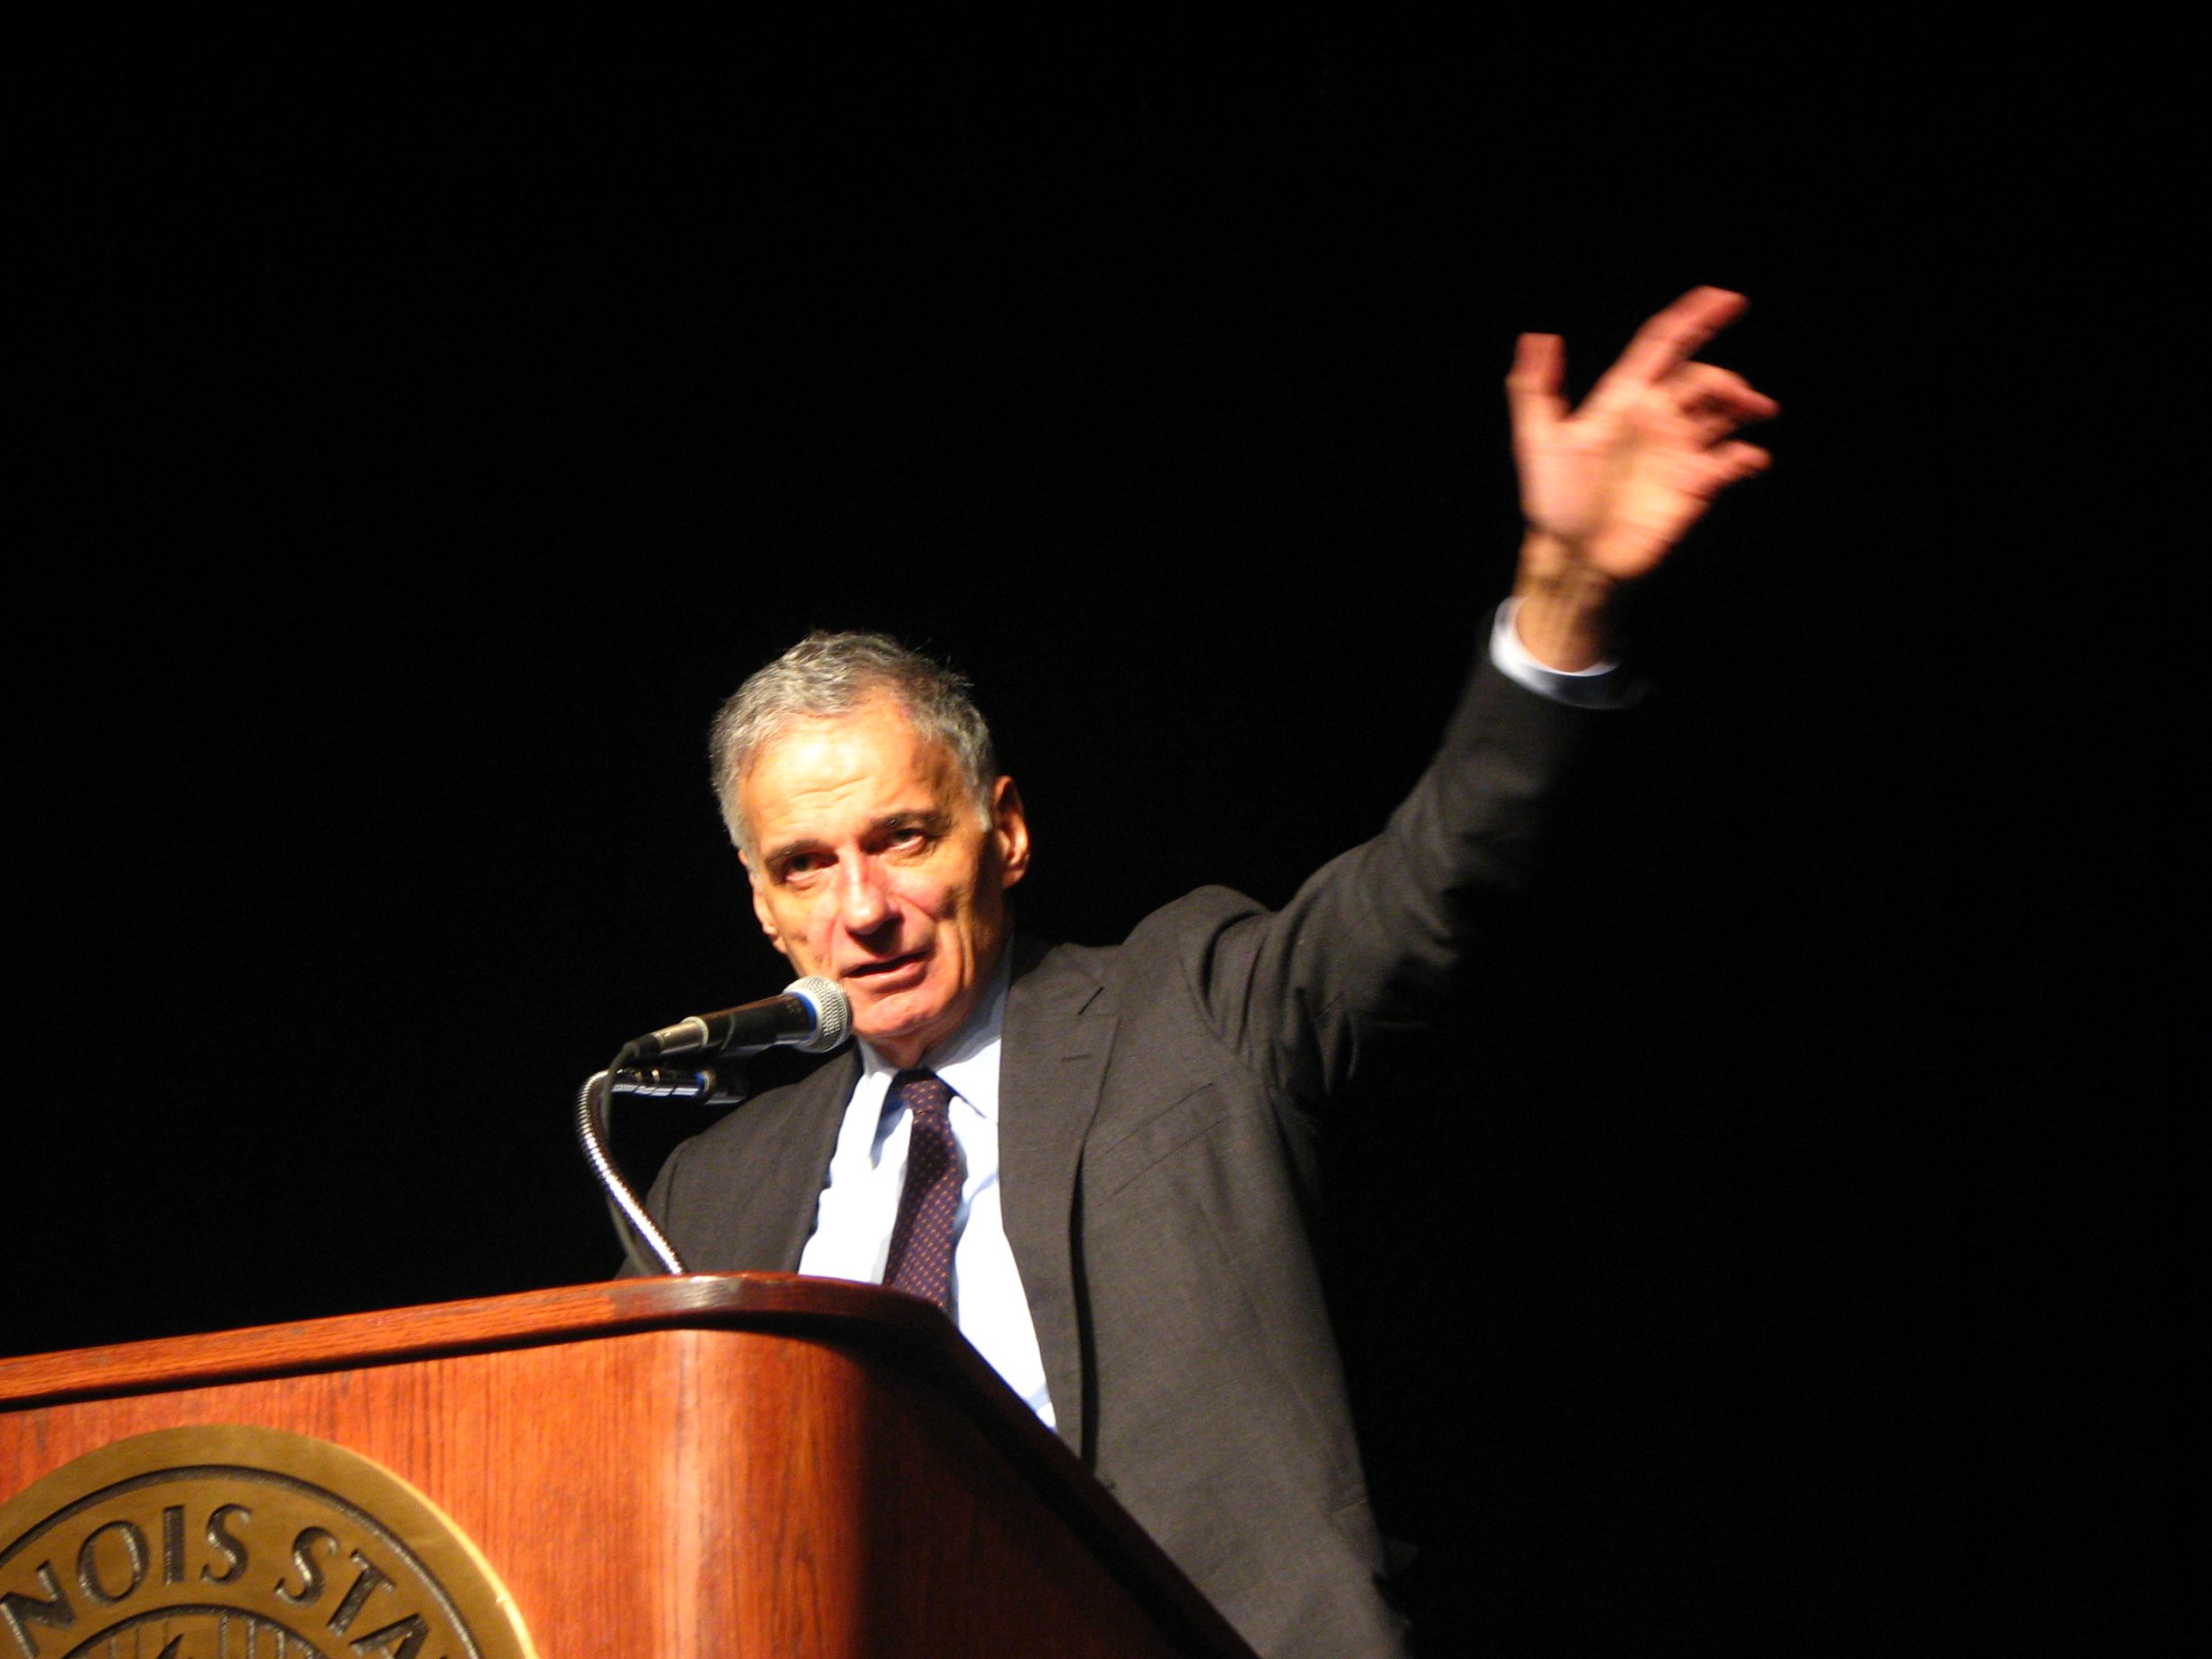 Ralph Nader på talerstolen 14 April 2008. Photo: soundfromwayout (CC BY 2.0).